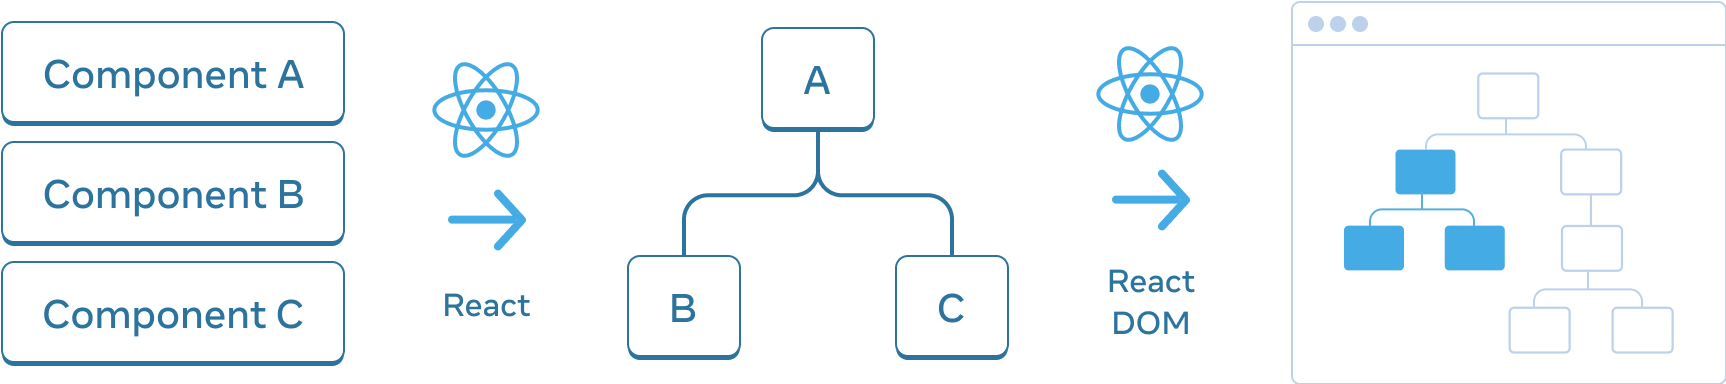 Діаграма із трьох секцій, розташованих горизонтально. У першій секції розташовані вертикально три прямокутники з написами 'Component A', 'Component B' та 'Component C'. Перехід до наступної секції здійснюється за допомогою стрілки з логотипом React над нею та підписом 'React'. Середня секція містить дерево компонентів: корінь, підписаний як 'A', і його двоє дітей, підписані як 'B' і 'C'. Перехід до наступної секції також здійснюється за допомогою стрілки з логотипом React над нею та підписом 'React DOM'. Третя і остання секція — це ескіз браузера, що містить дерево з 8 вузлами, в якому виділено кольором лише піддерево (що вказує на піддерево з середнього розділу).